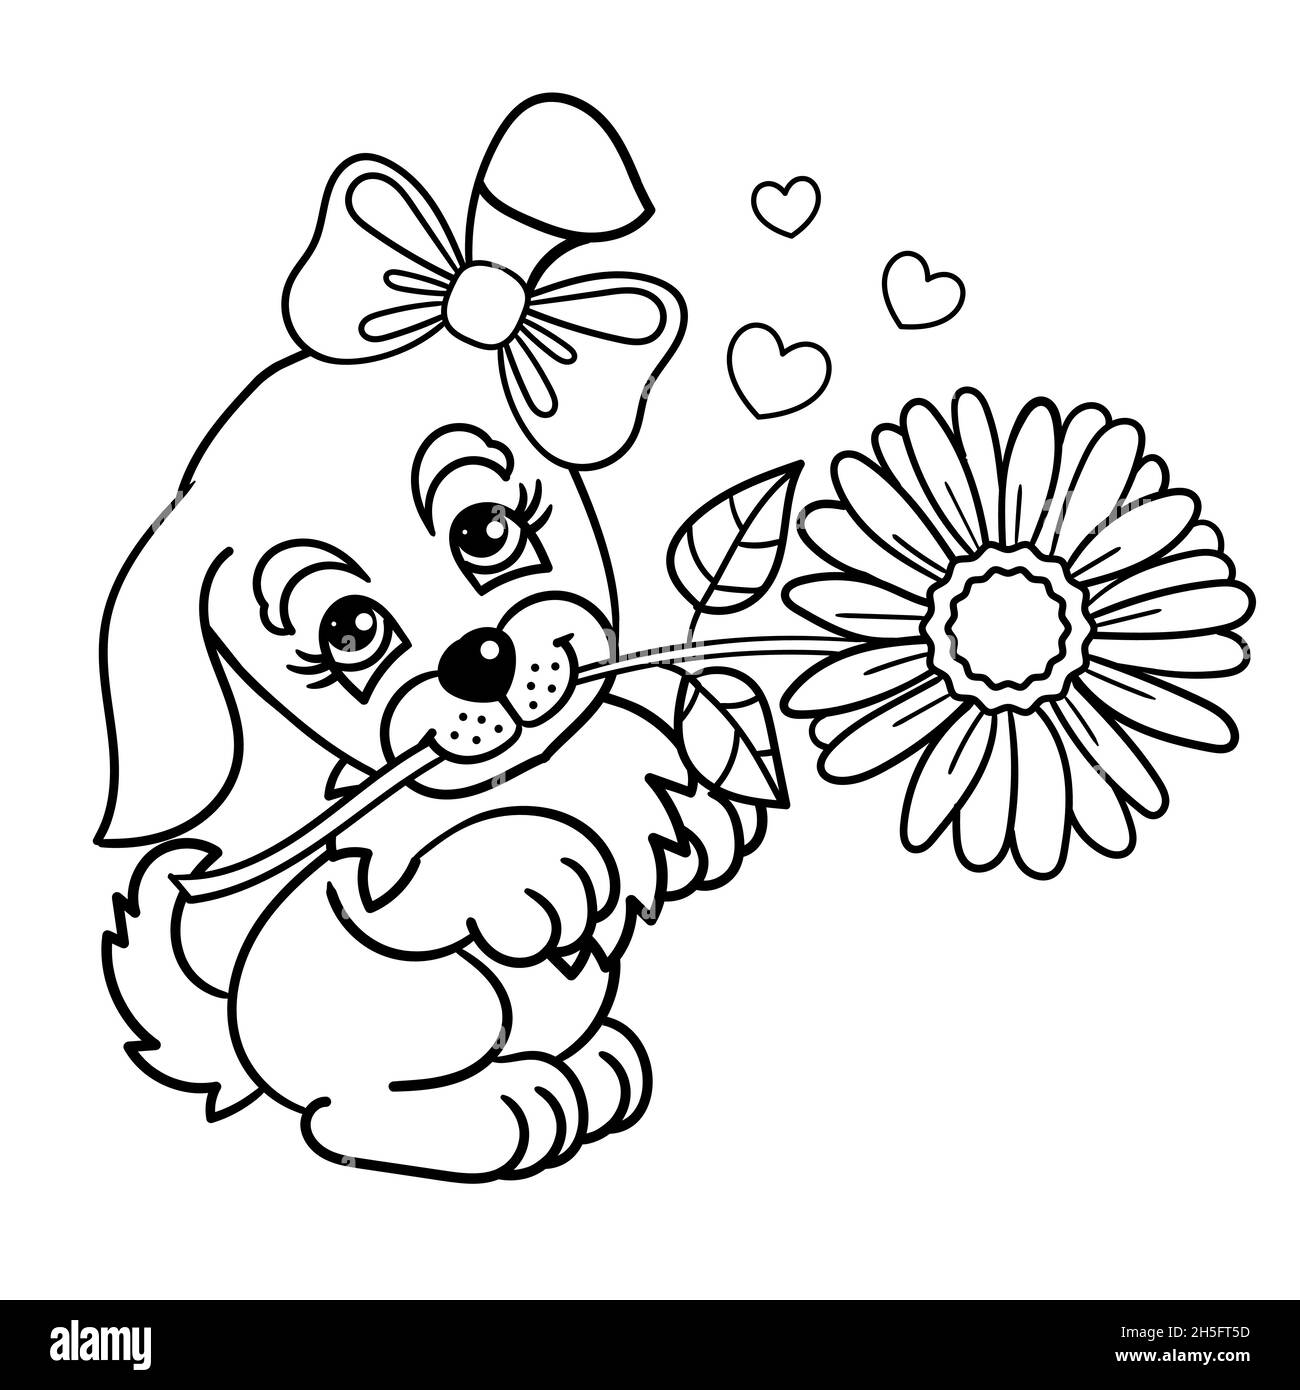 Niedlichen Hund Cartoon Hand gezeichnet Vektor Illustration. Kann für T-Shirt-Druck verwendet werden, tragen Kinder Modedesign, Baby-Dusche-Einladungskarte. Stock Vektor